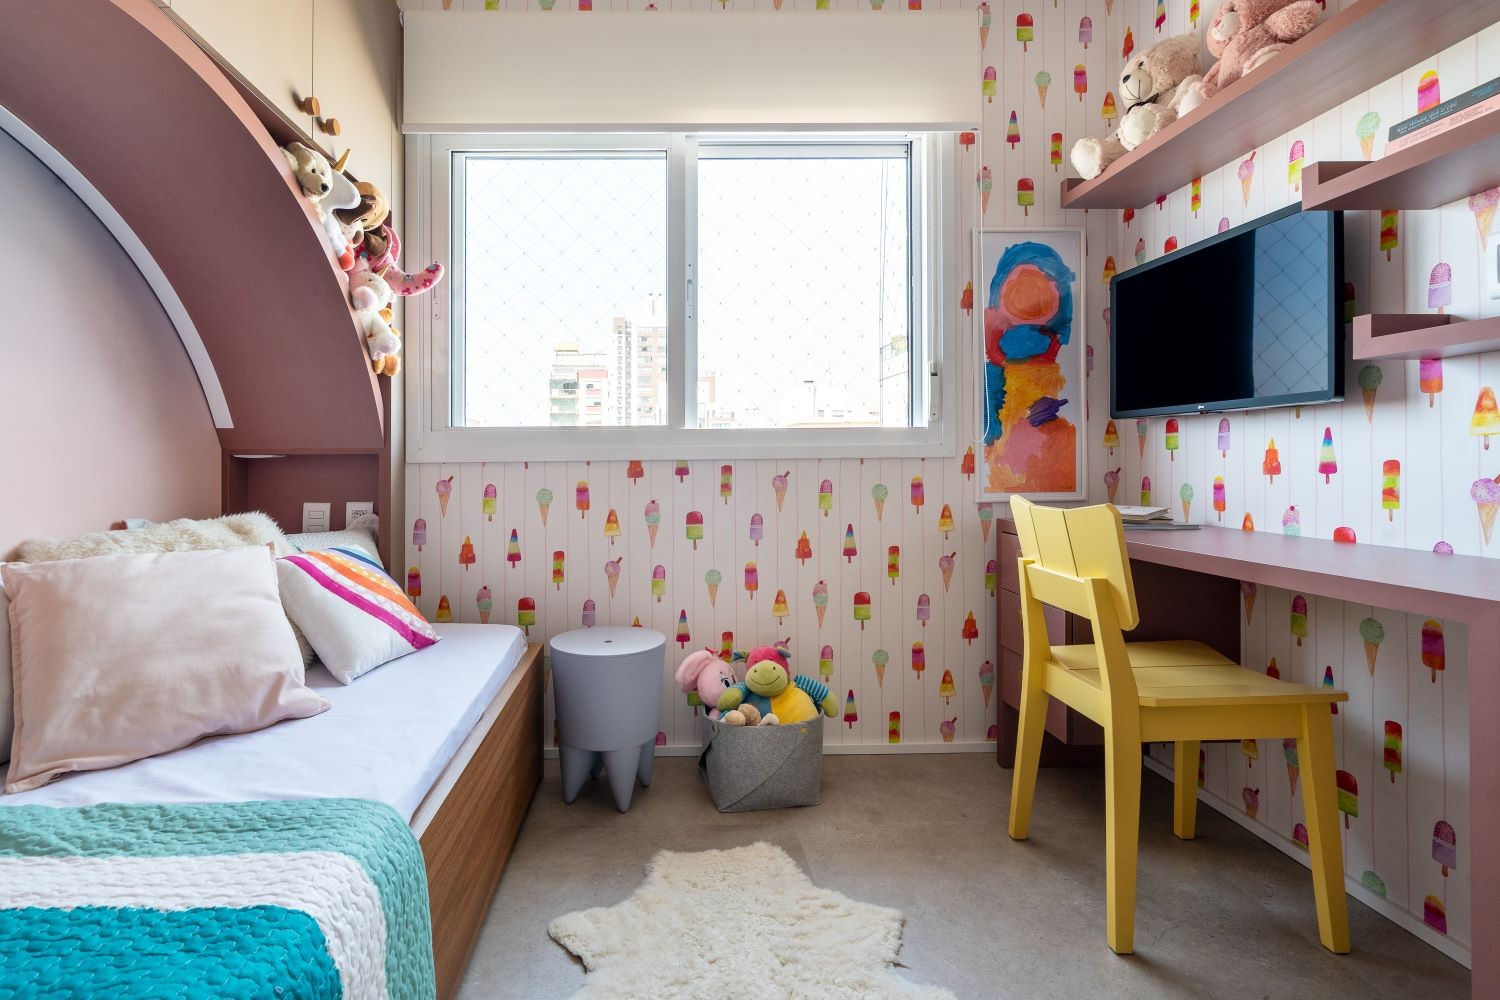 QUARTO | No quarto da filha, a presença de cores torna o ambiente mais lúdico e interativo (Foto: Divulgação / Oscar Bittencourt)